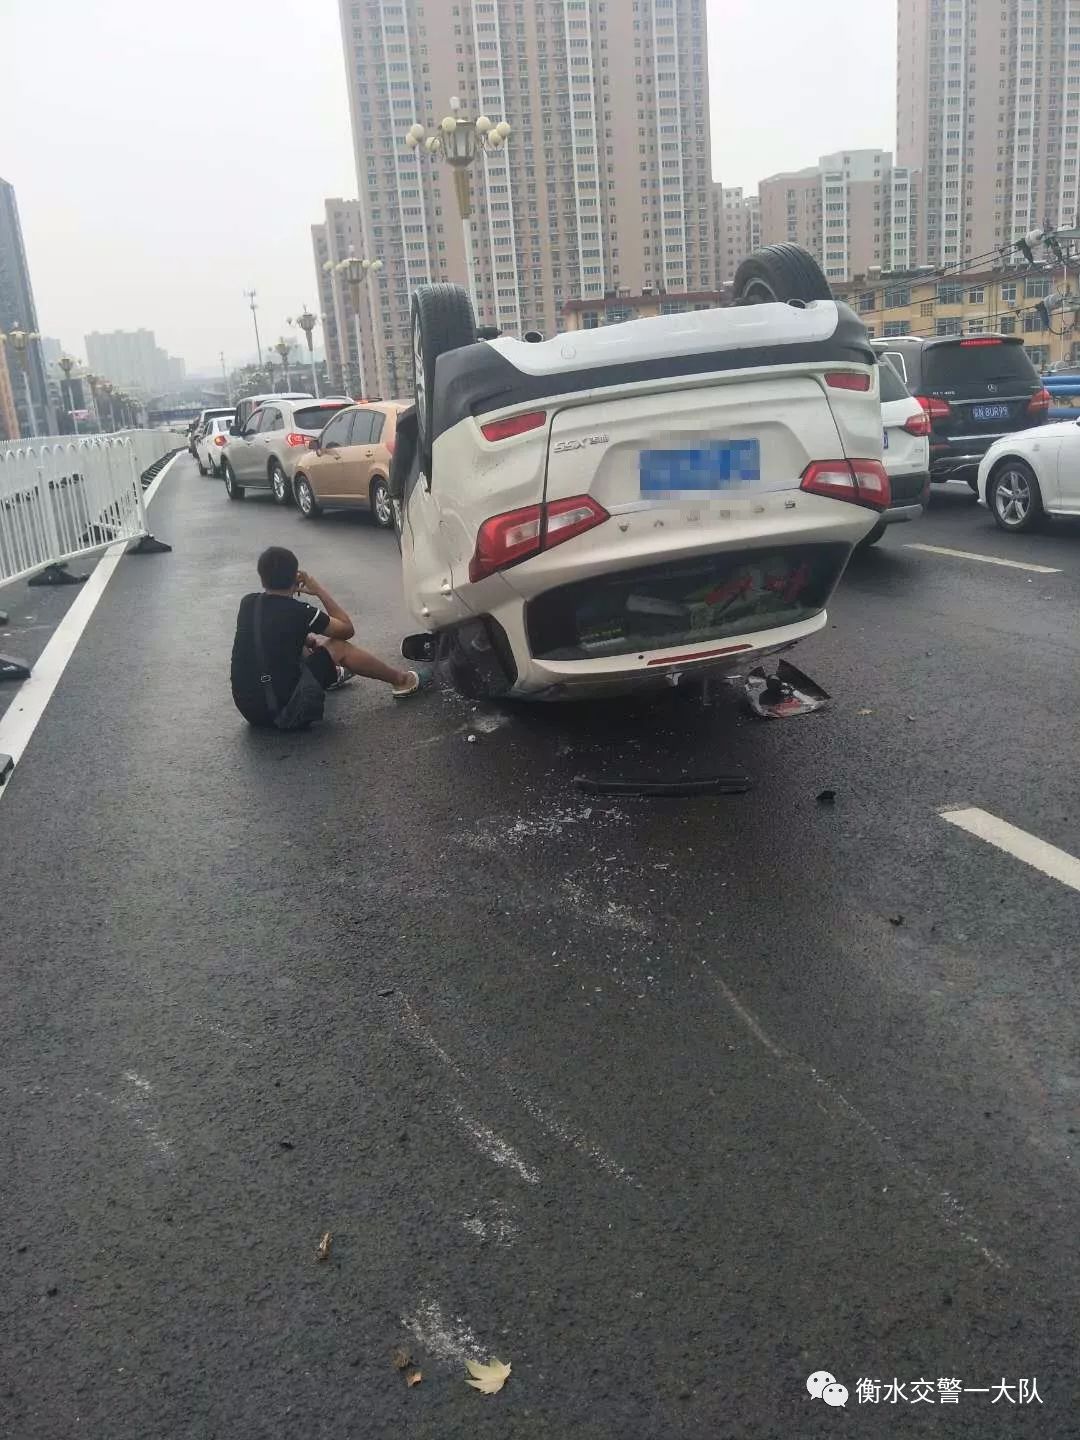 【交警快讯】榕花街大桥翻车事故,竟是因为"它"!